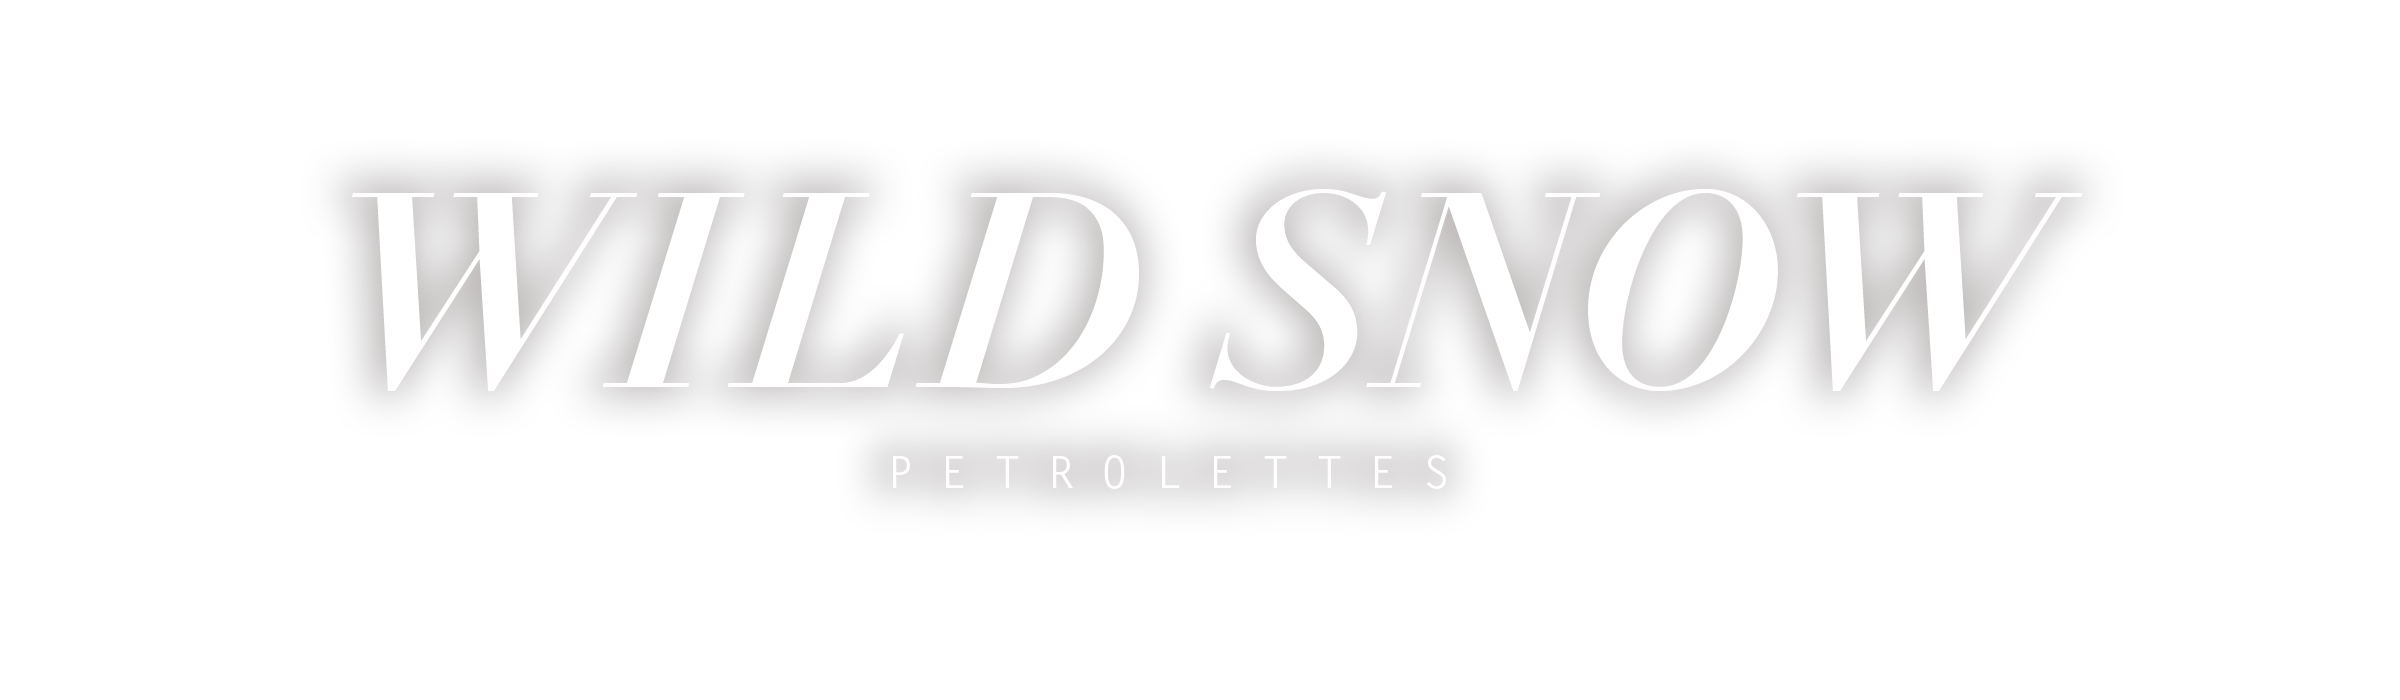 Petrolettes_WildSNOW_shadow_2